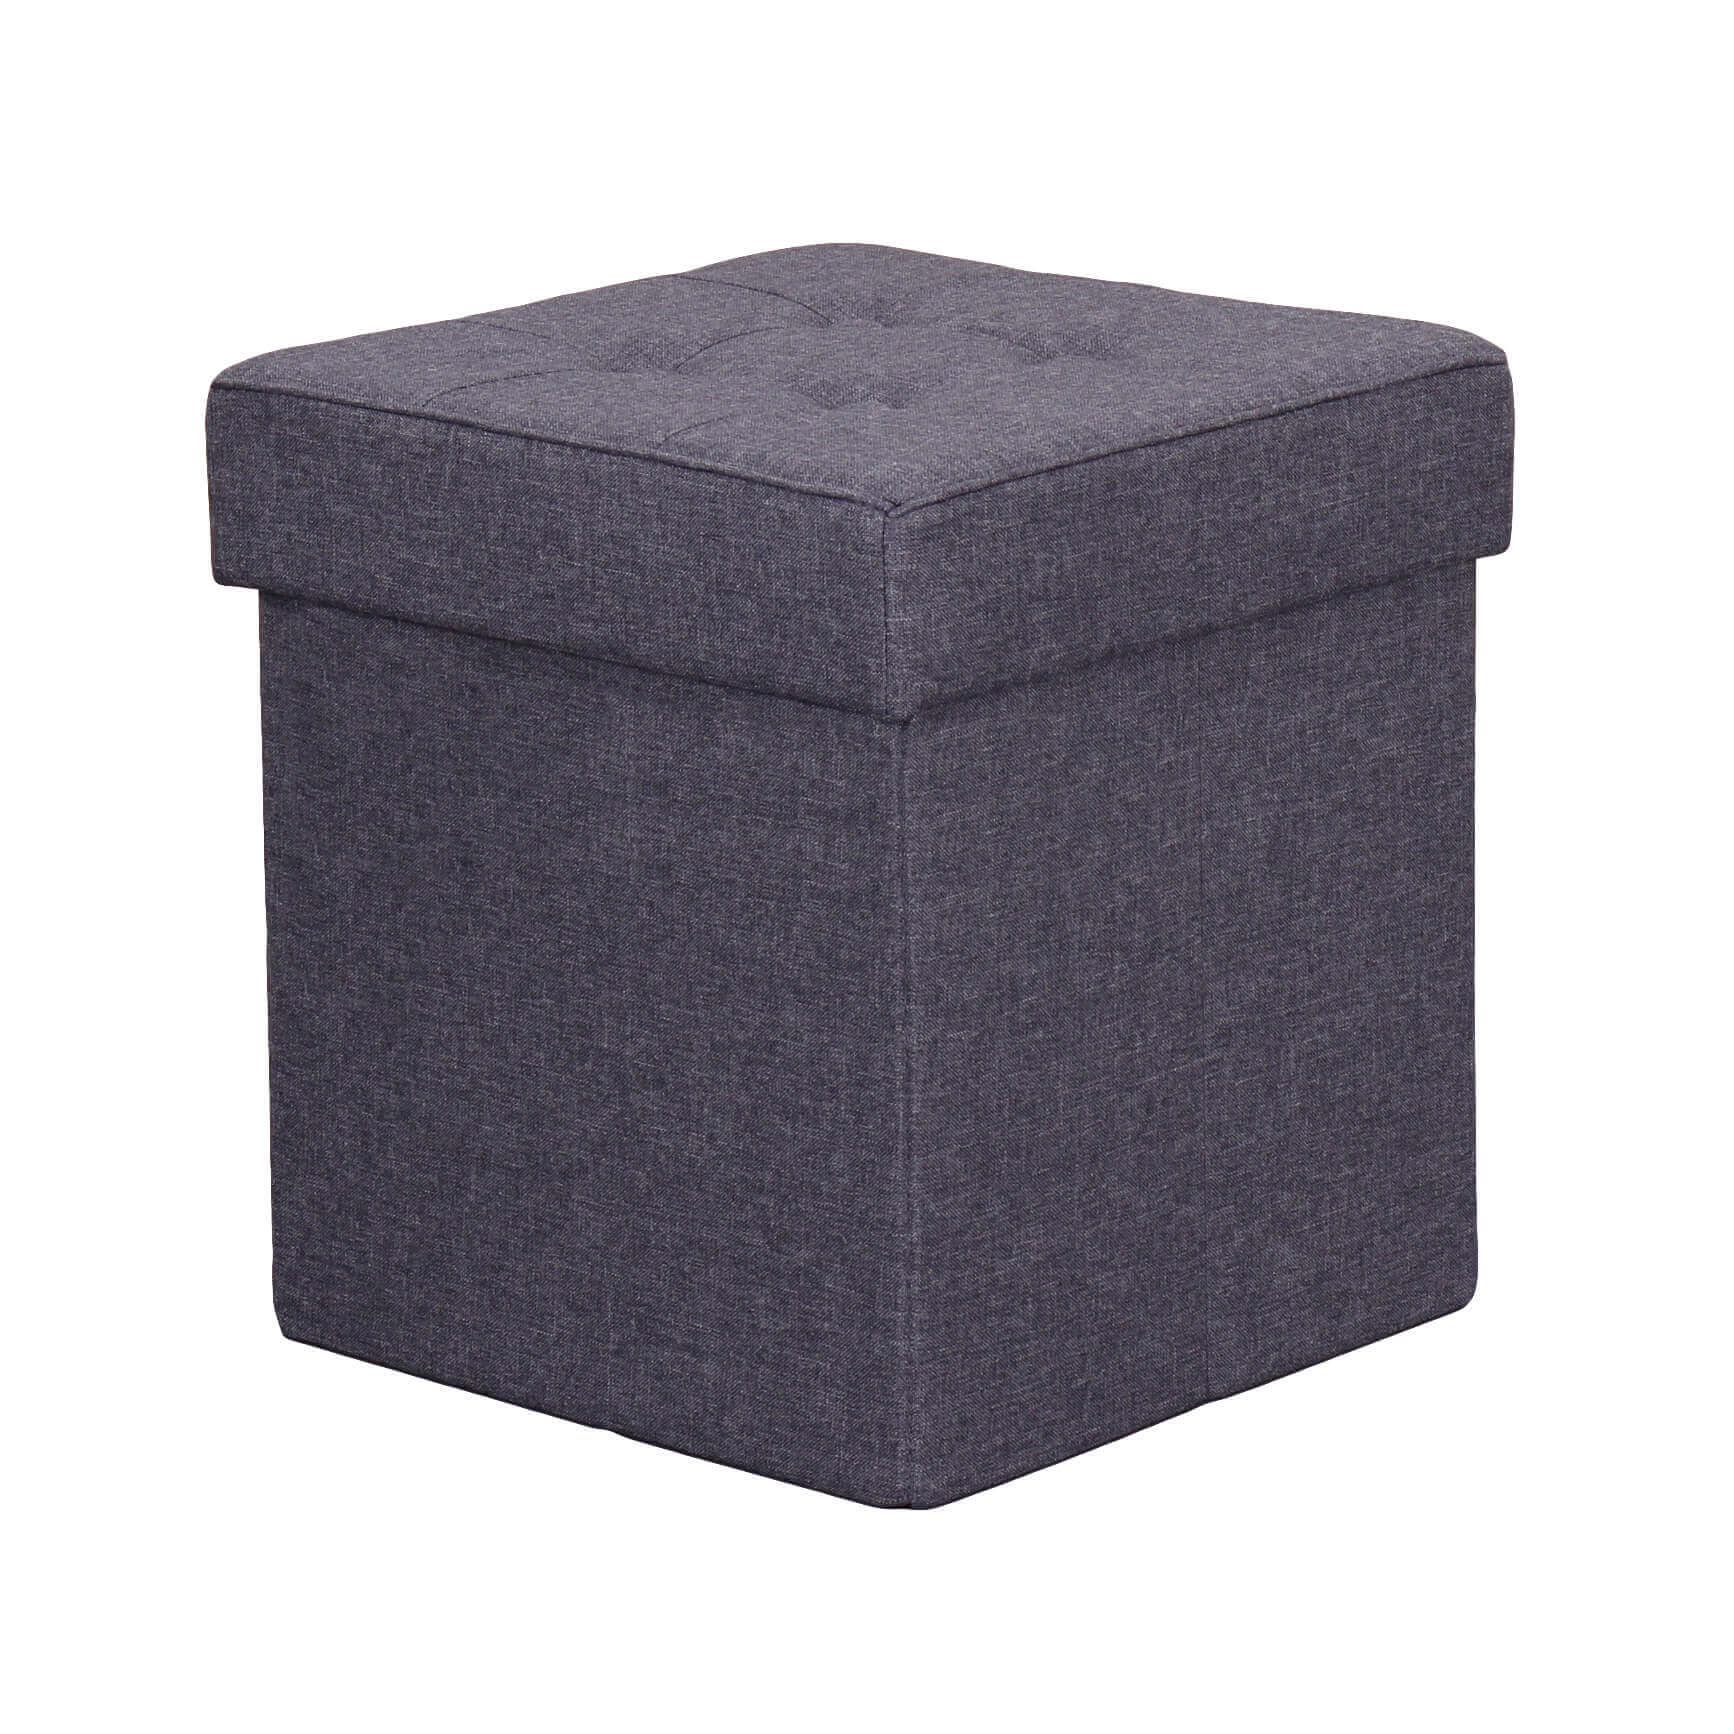 Milani Home pouf quadrato in stoffa di design moderno, cm 38 x 38 x 40 h Grigio scuro 38 x 38 x 40 cm